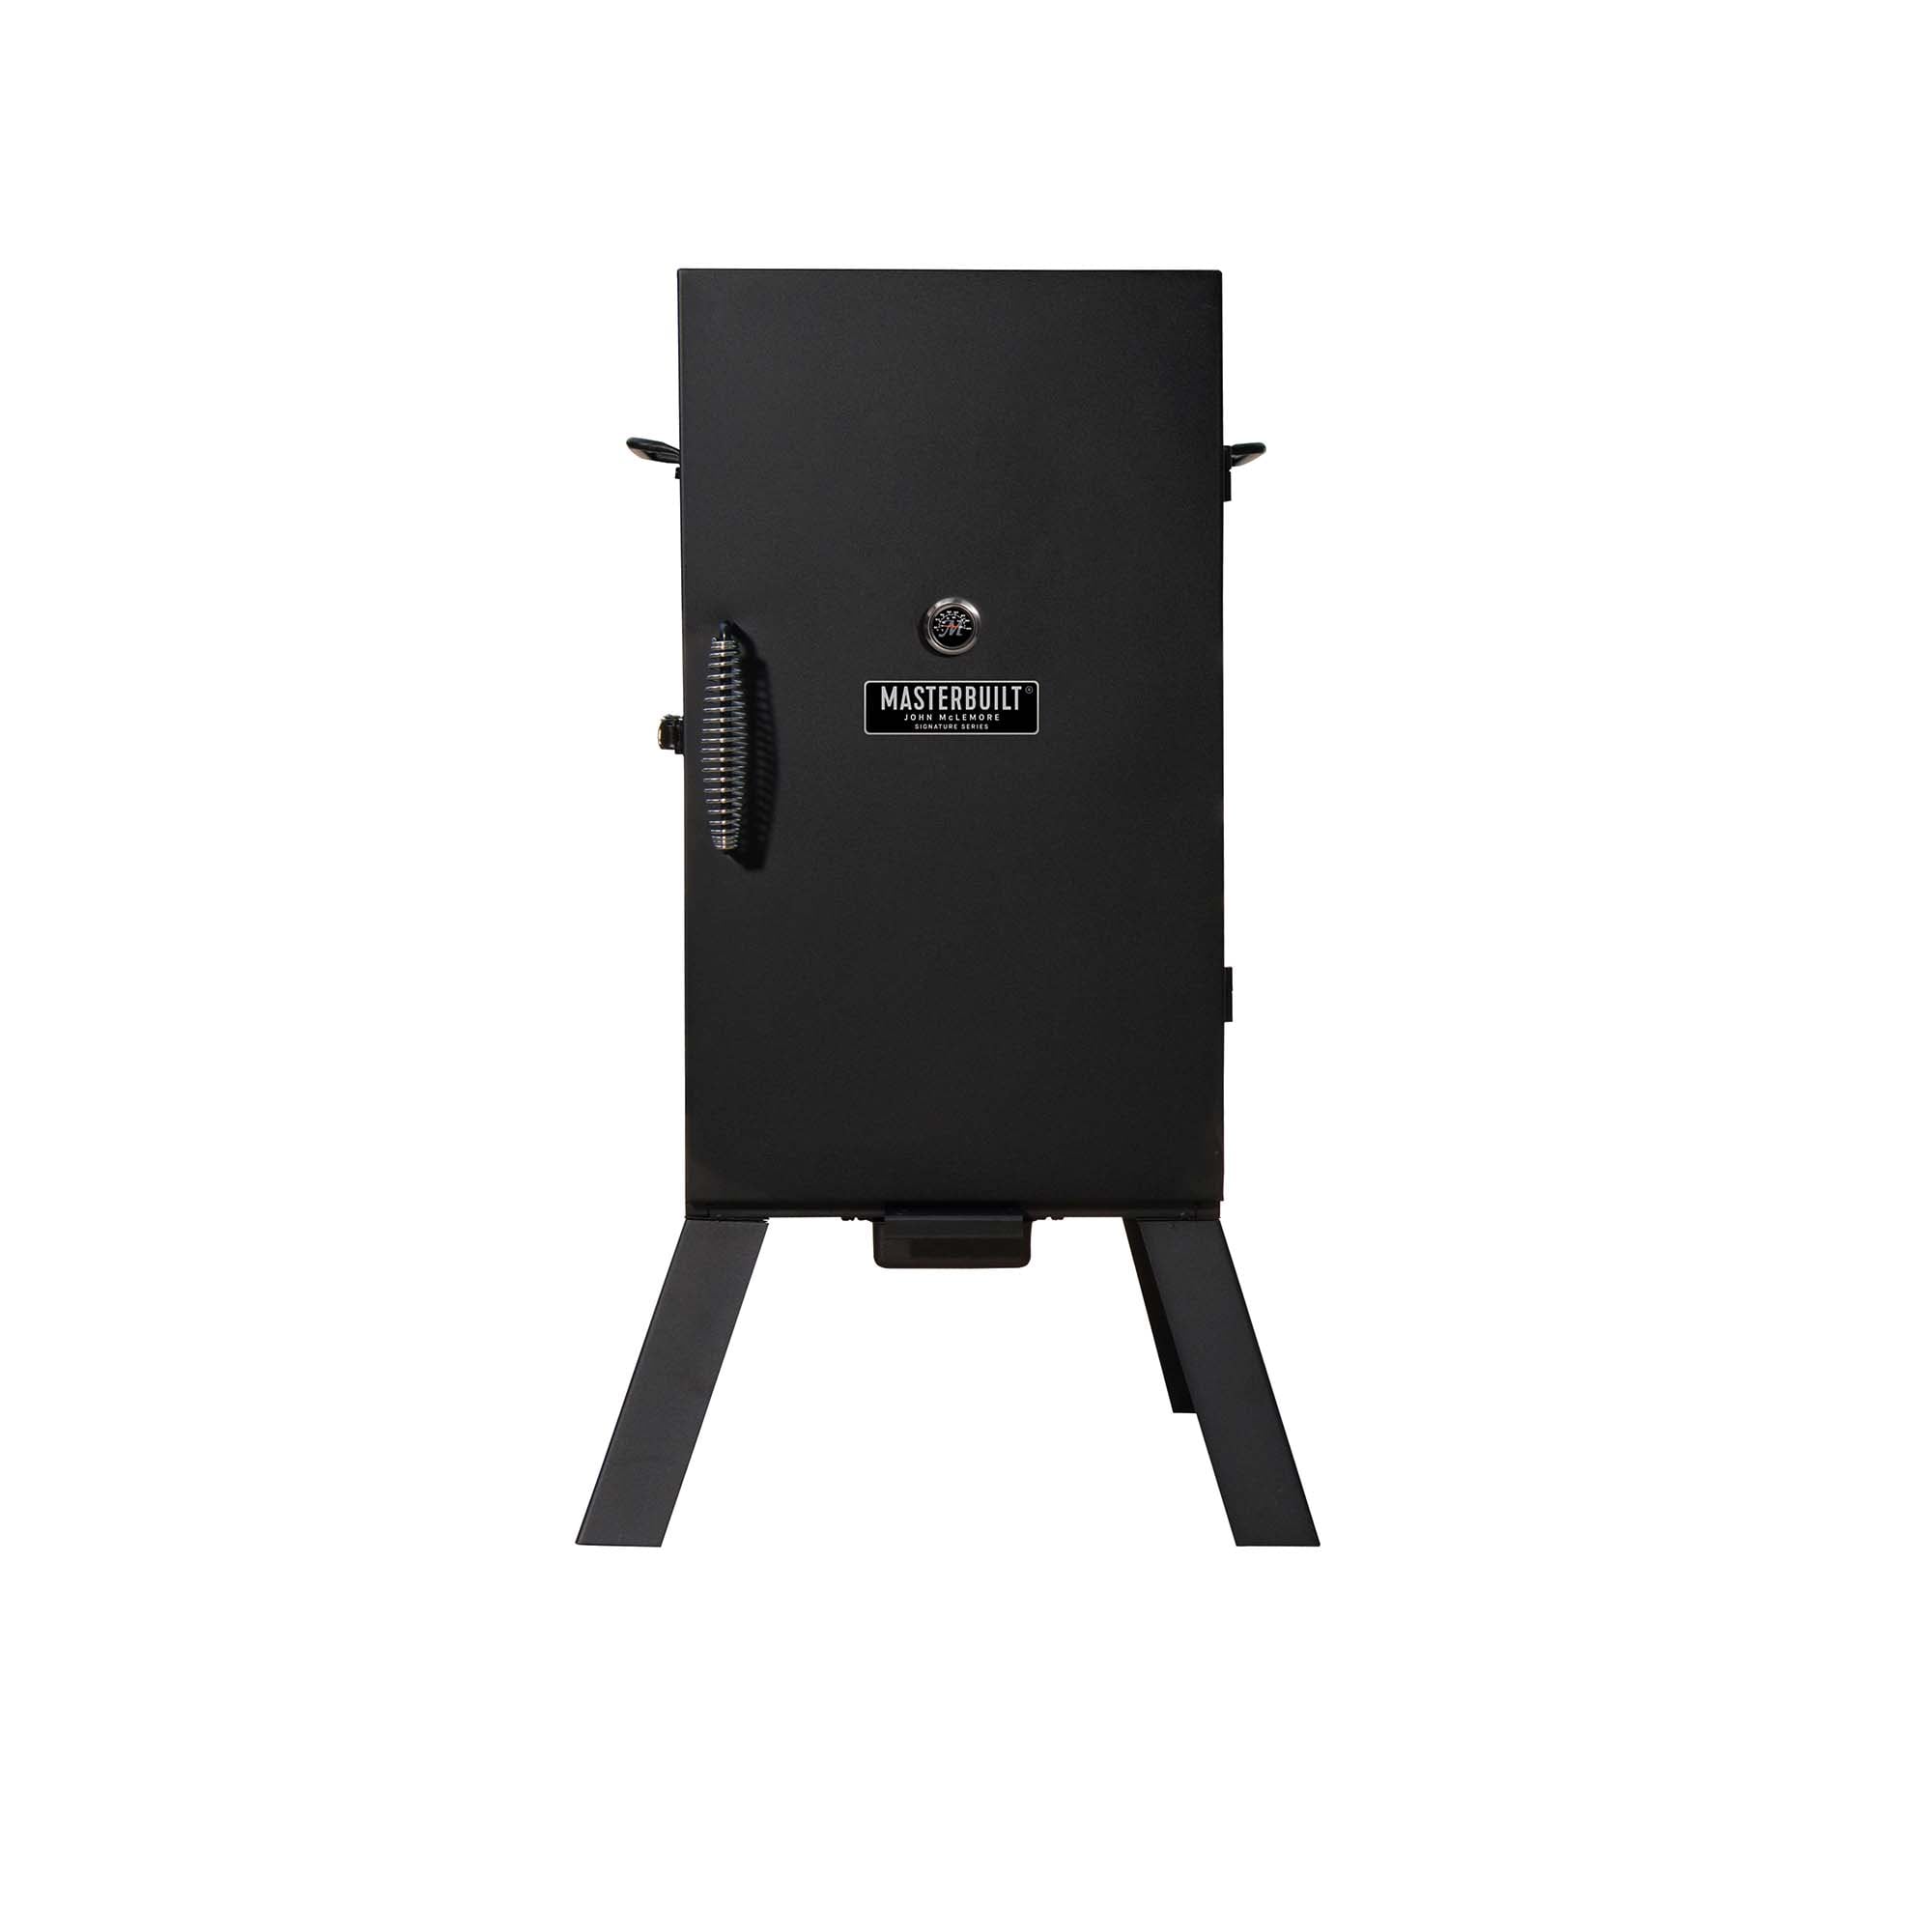 Select Lowes - Masterbuilt John McLemore Signature Series 530-Sq in Black Electric Smoker - $89.57